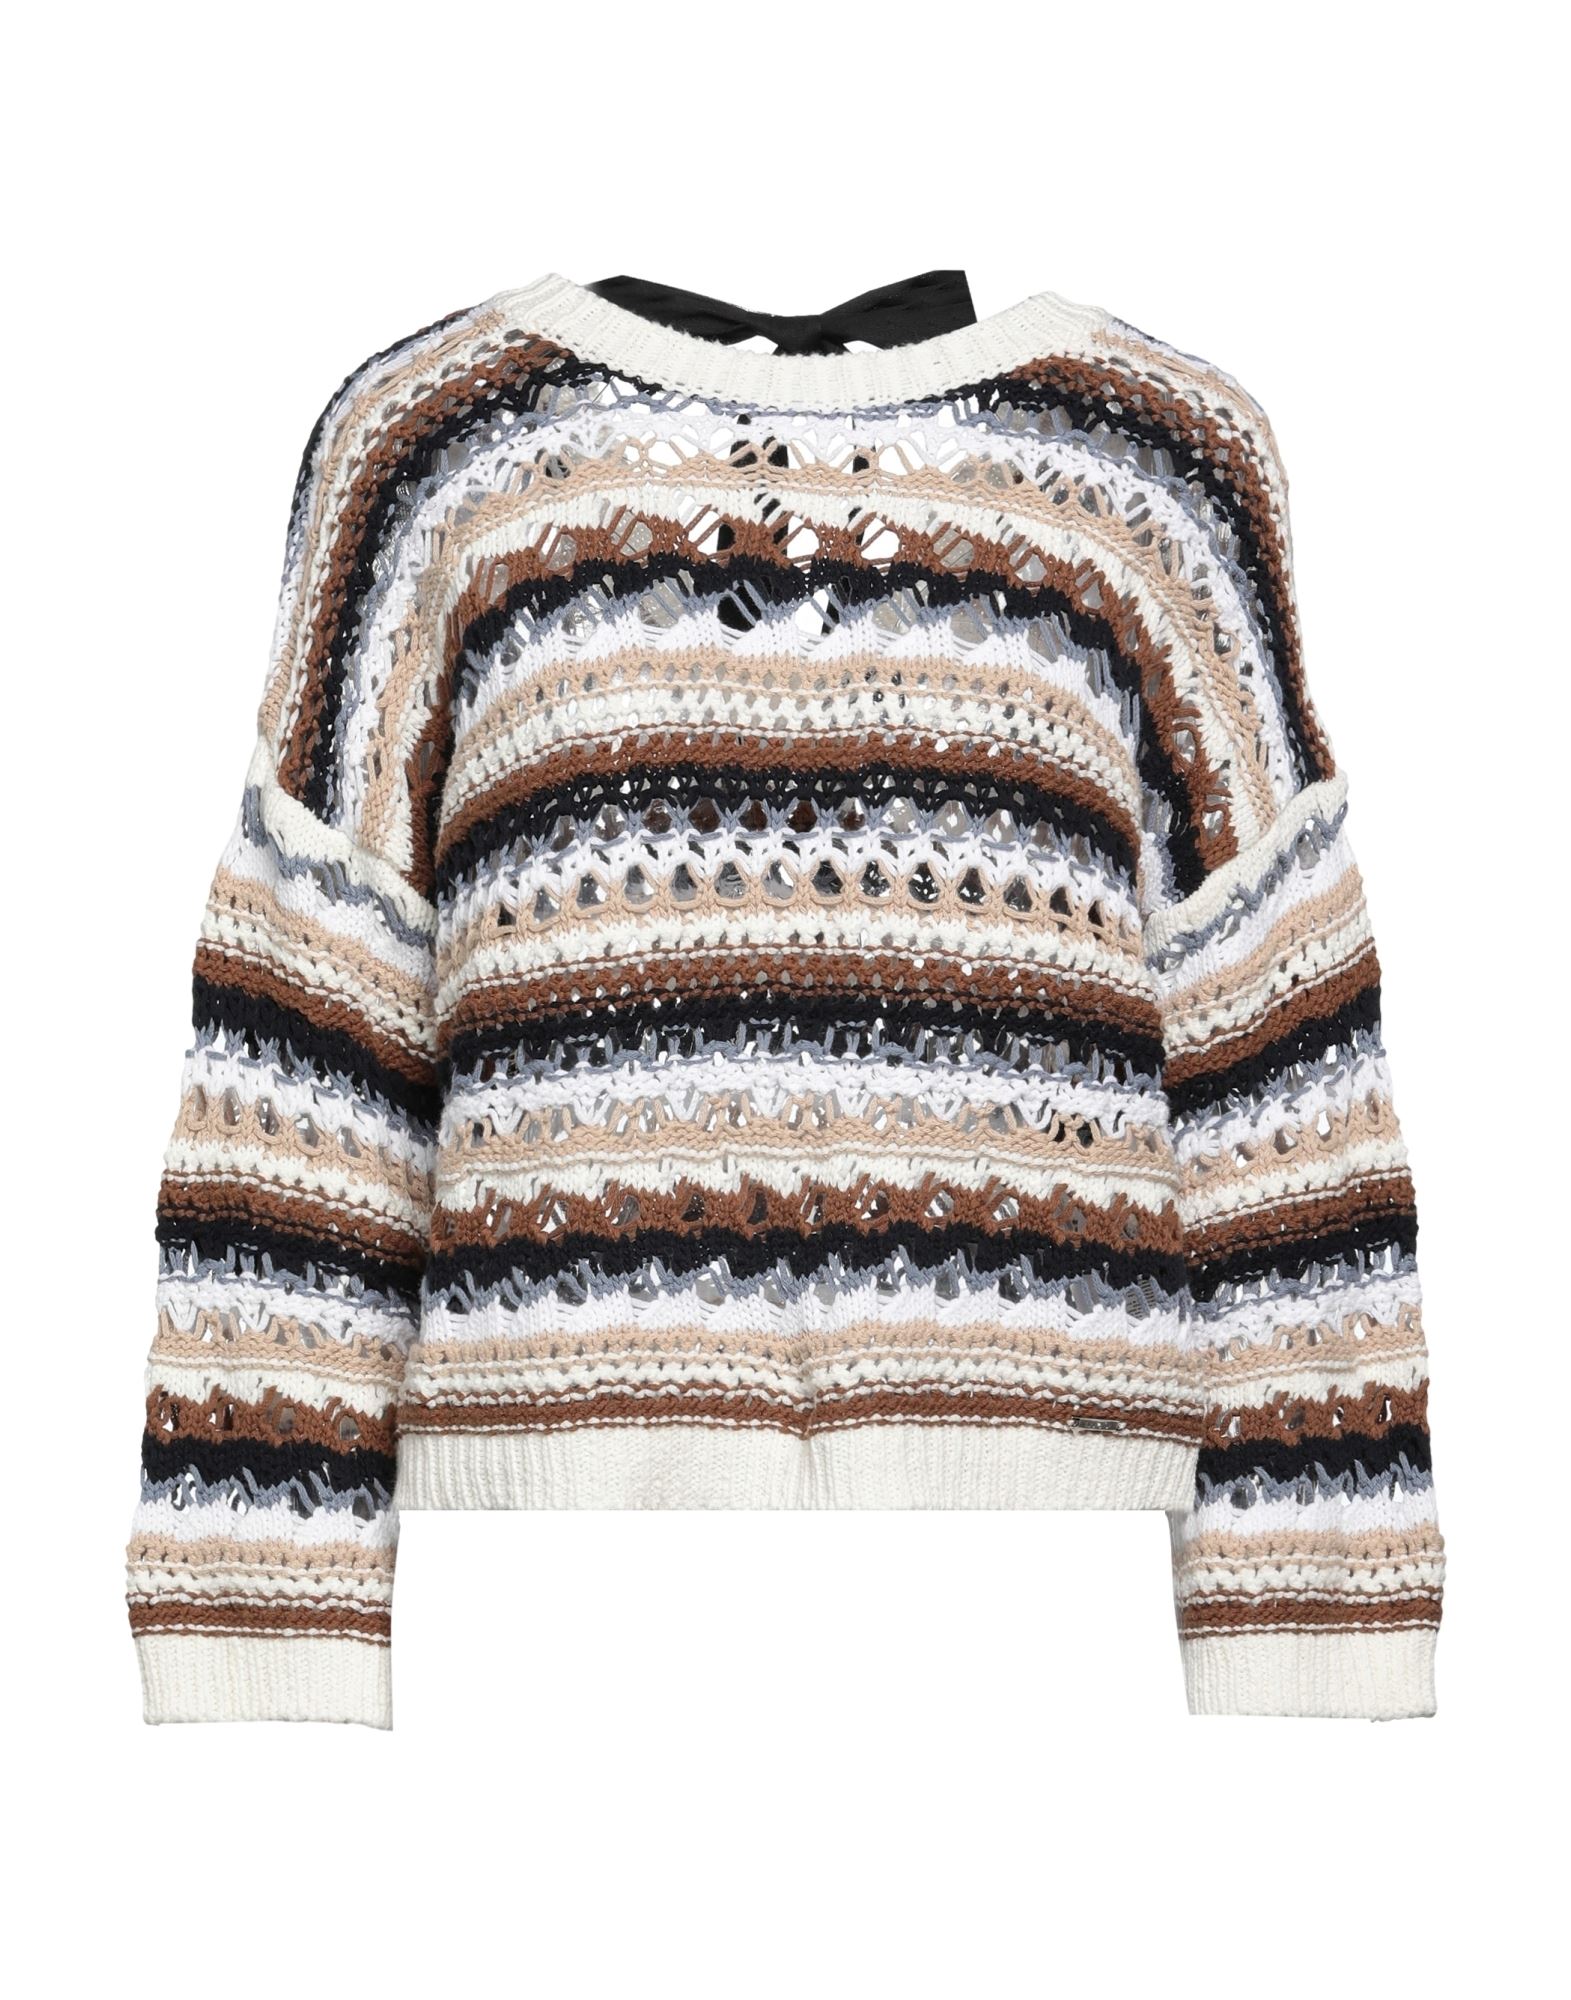 Liu •jo Sweaters In Brown